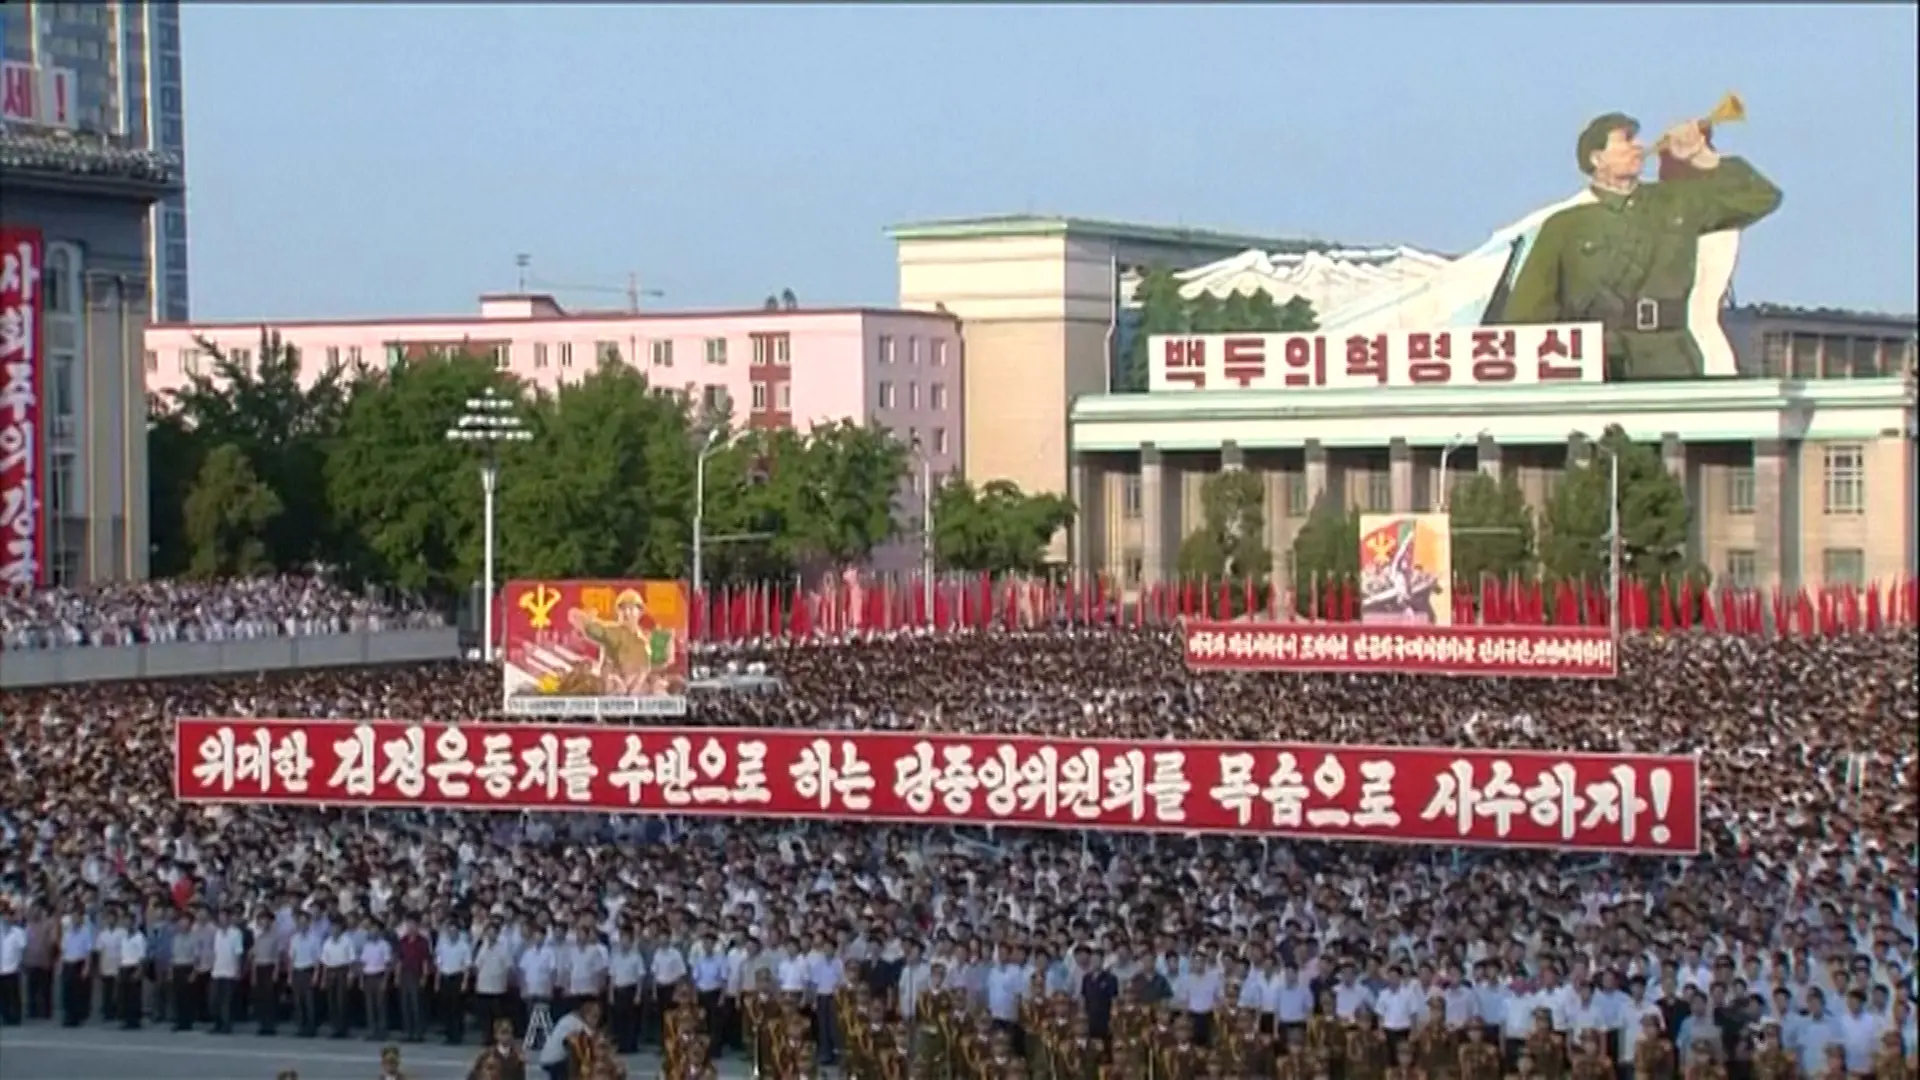 מאות אלפים הפגינו בפיונגיאנג נגד ארה"ב: "החרם והלחצים לא ימנעו את המשך קיומנו"